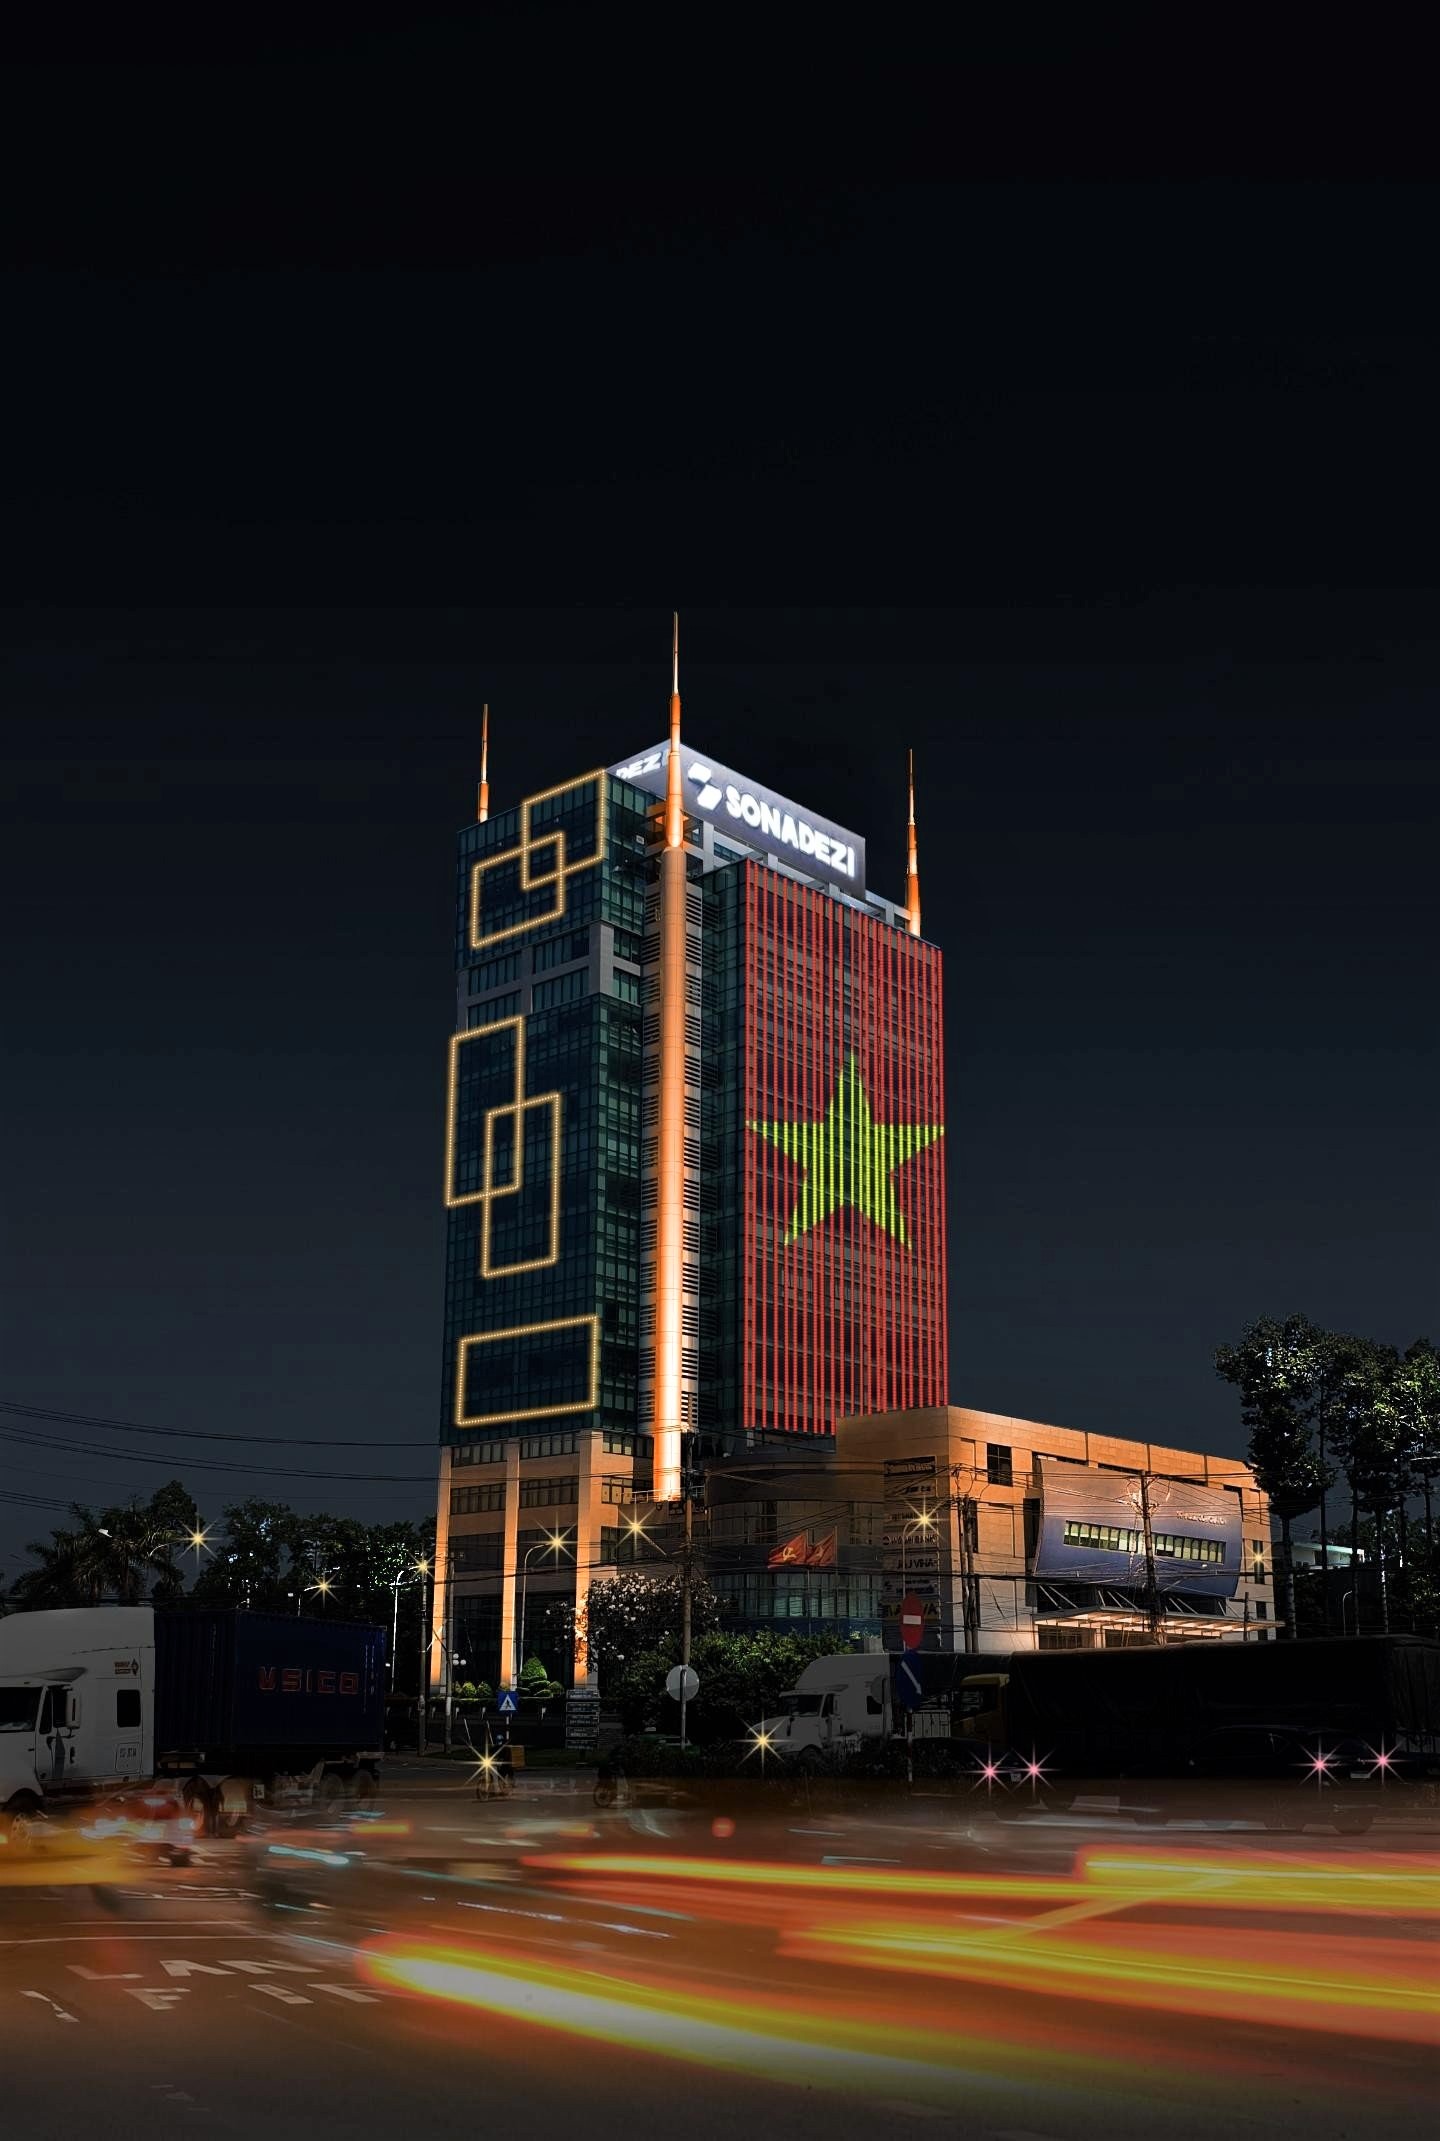 Tòa nhà Sonadezi với hệ thống chiếu sáng mỹ thuật trở thành điểm nhấn nổi bật và thu hút tại khu vực Ngã tư Vũng Tàu